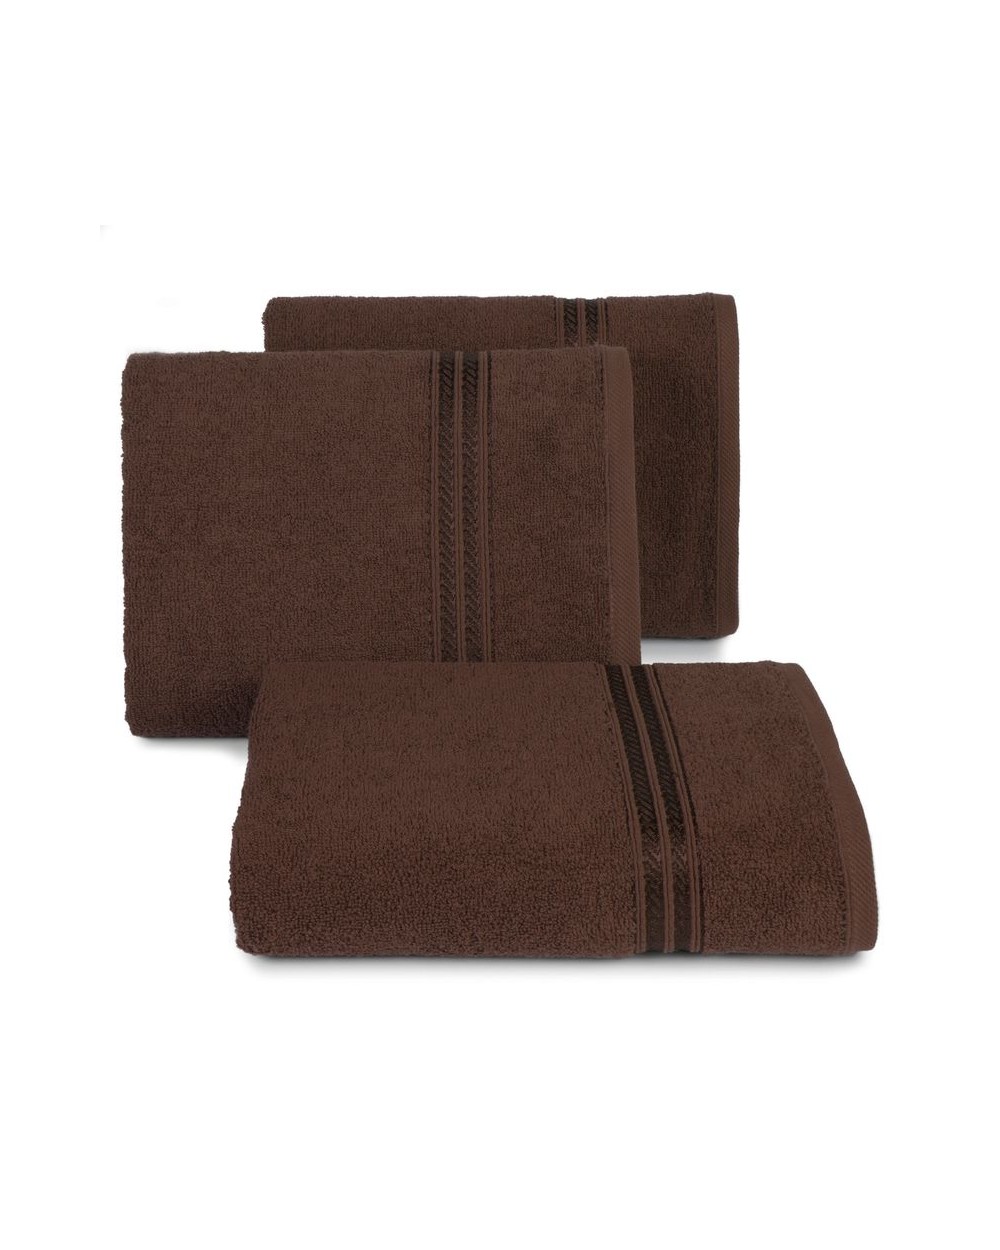 Ręcznik bawełna 30x50 Lori brązowy